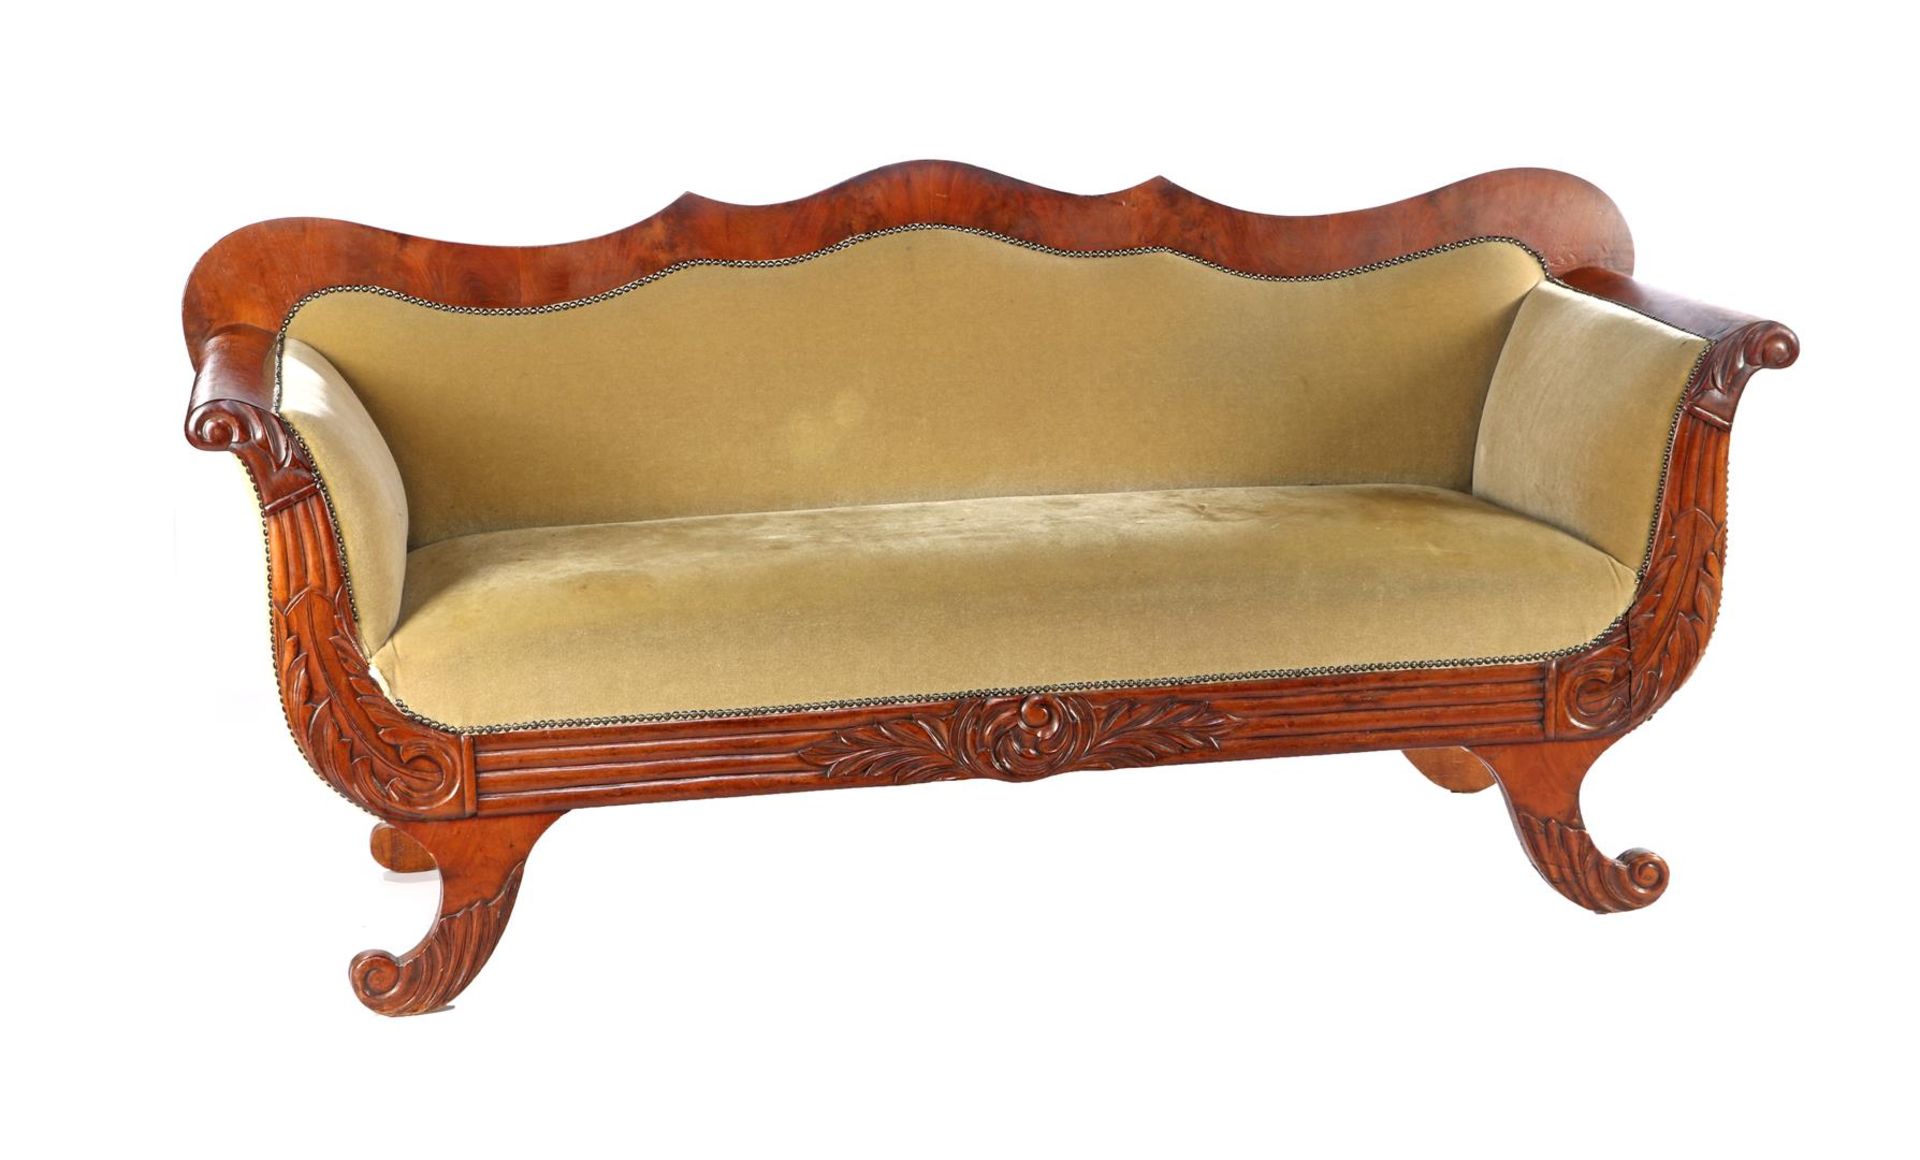 Mahogany on an oak sofa